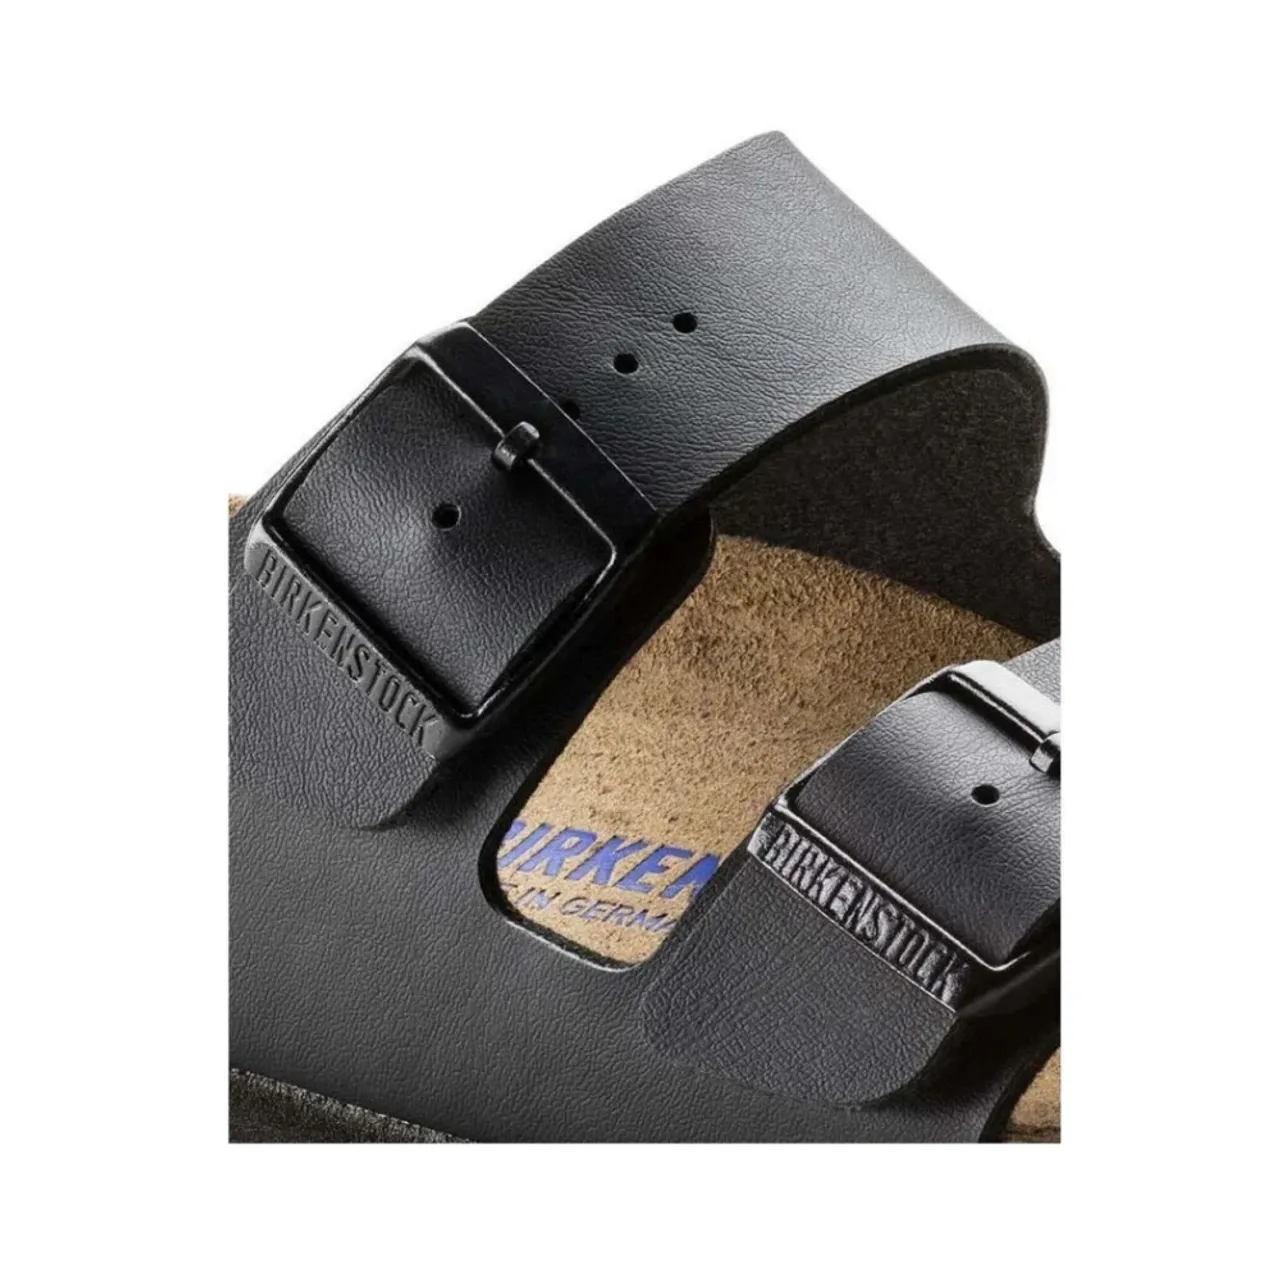 Birkenstock , Sandals Arizona Soft Footbed Birko-Flor ,Black male, Sizes: